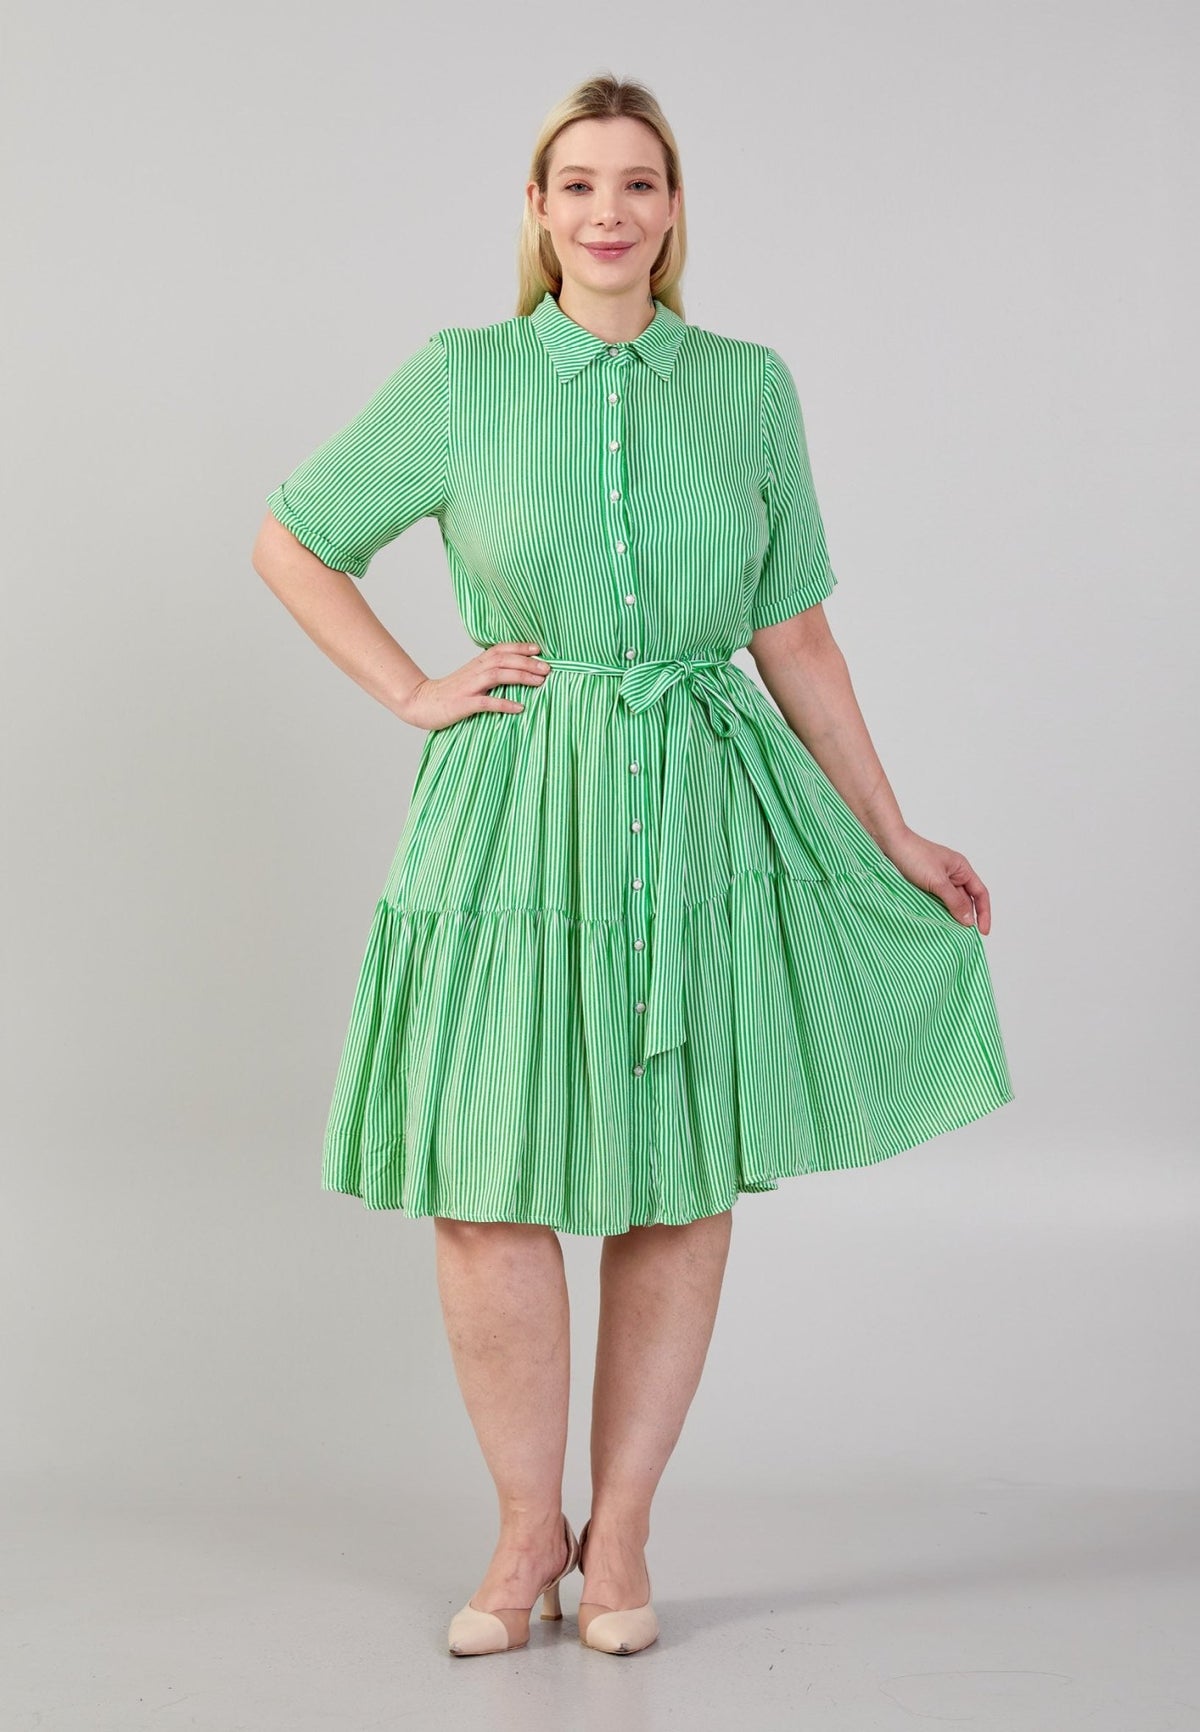 D7012 Green & White Stripe Knee Length Dress - La Elegant